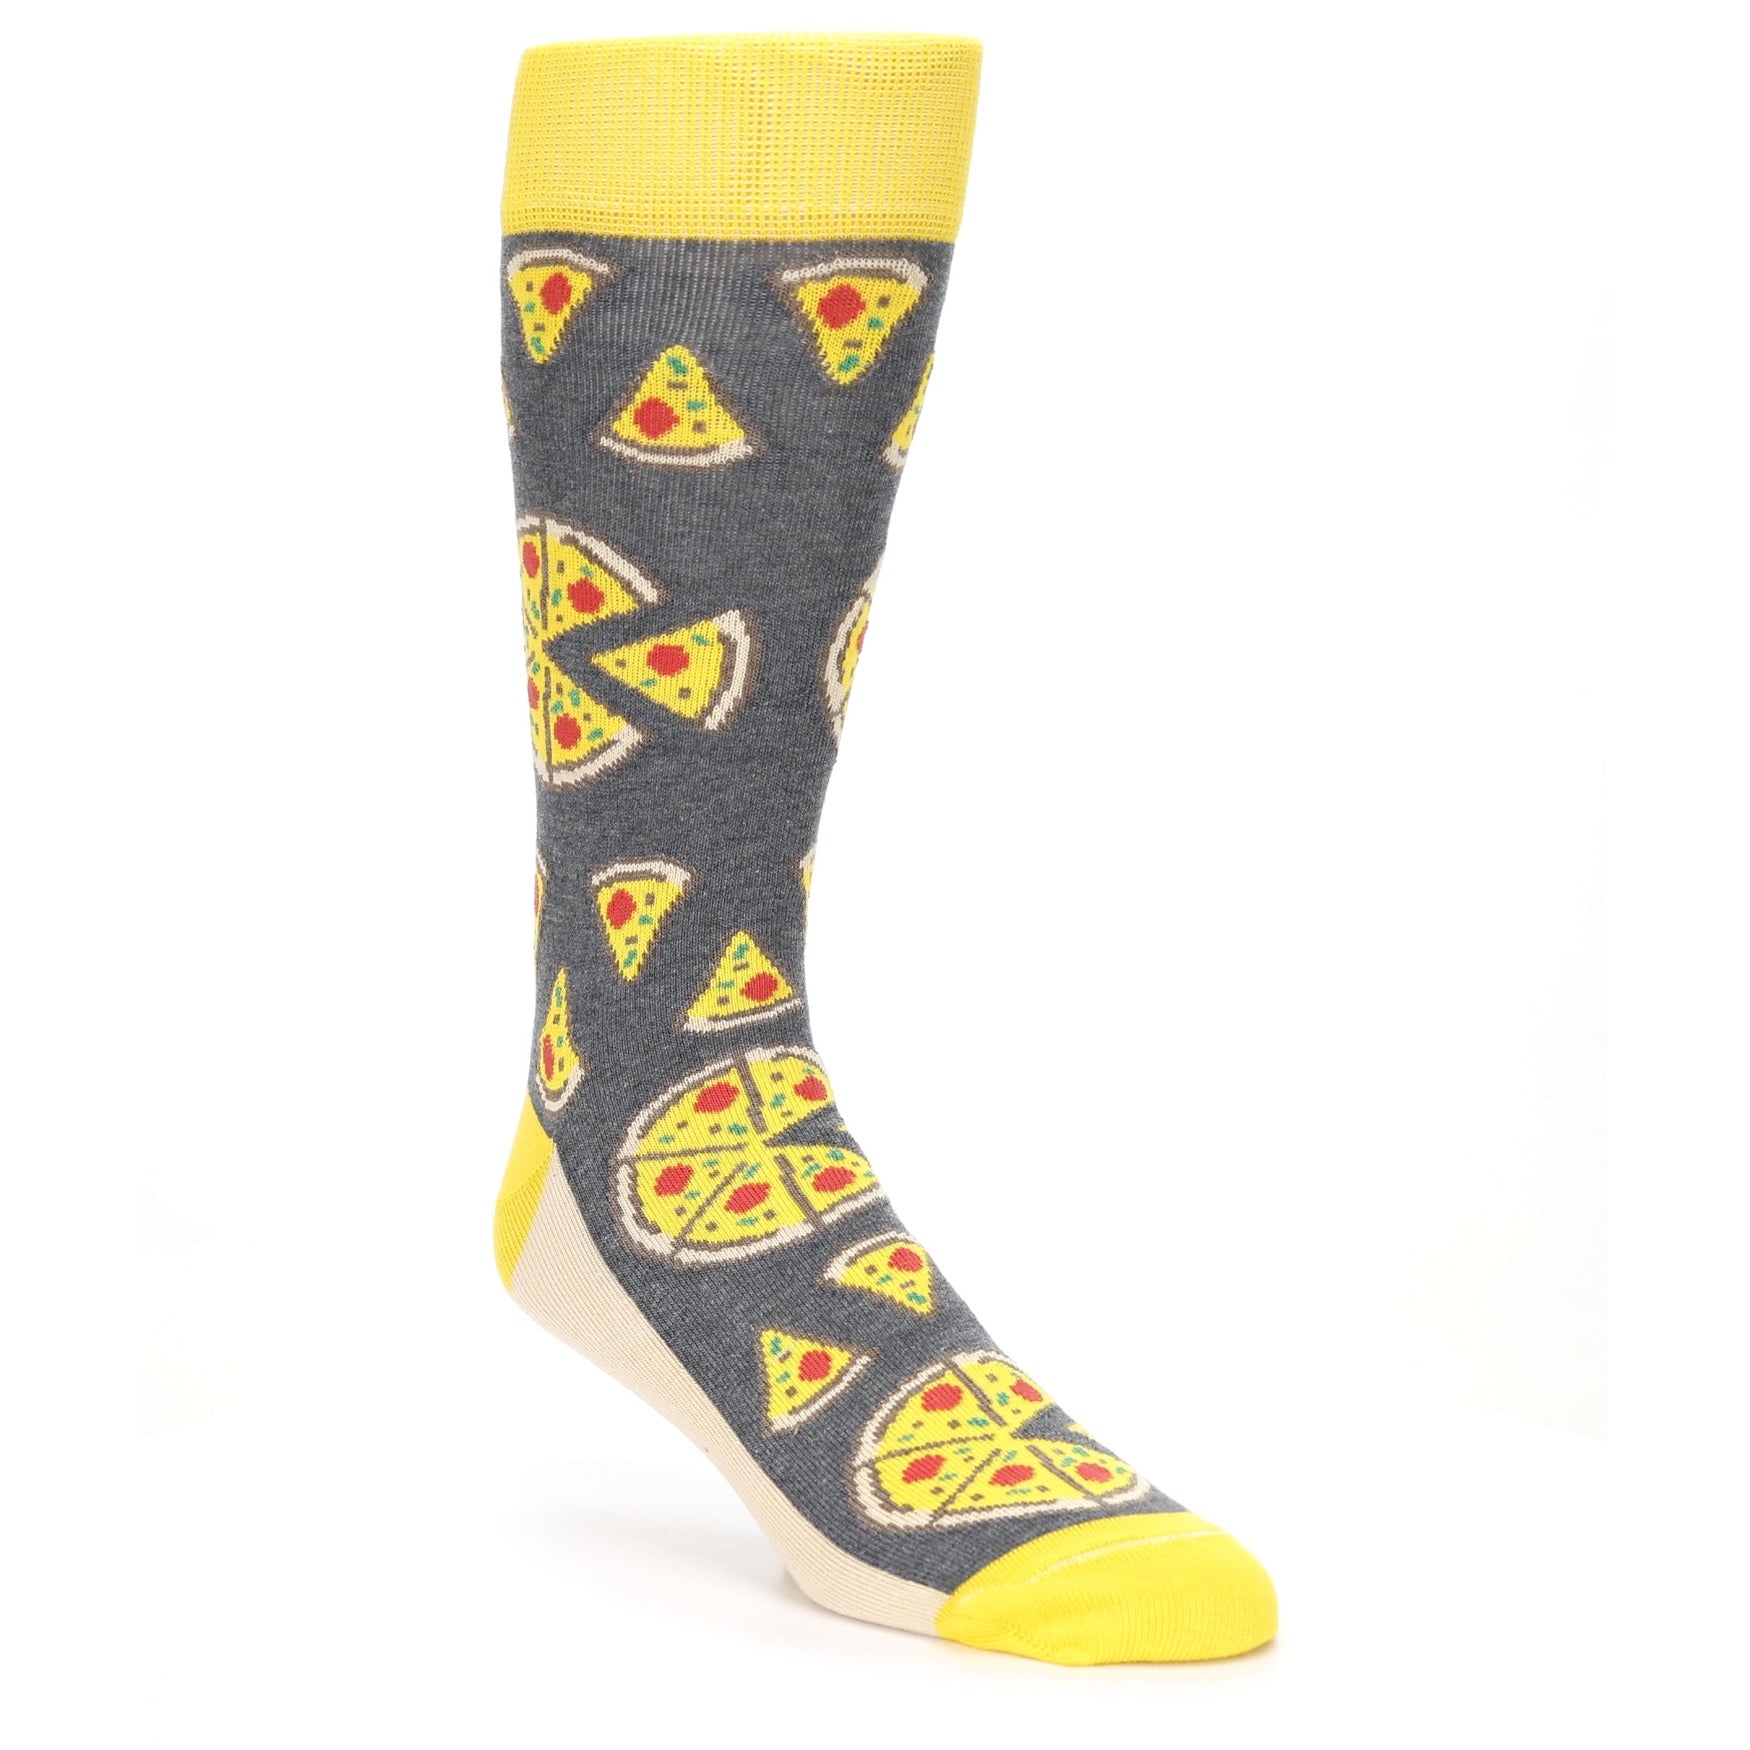 Pizza Socks - USA Made - Men's Novelty Socks